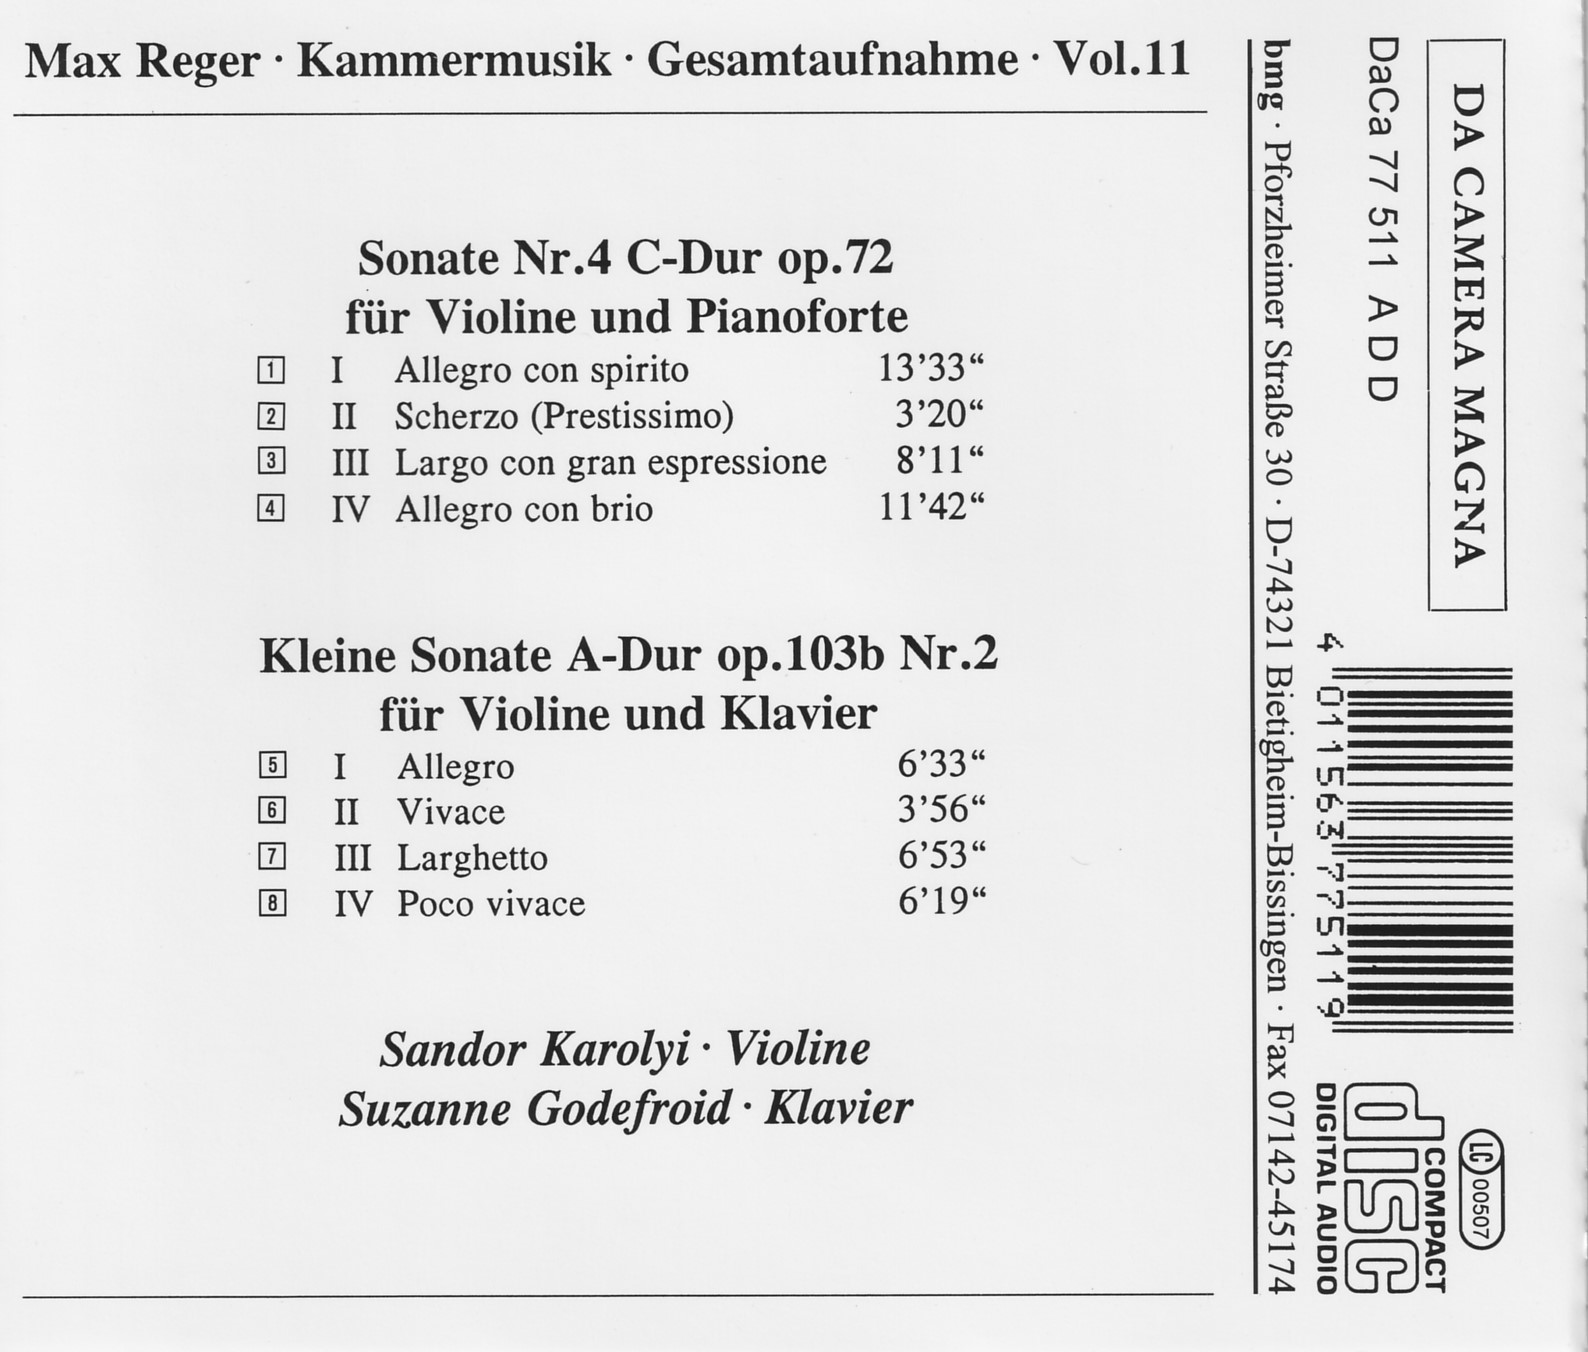 Max Reger - Kammermusik komplett Vol. 11